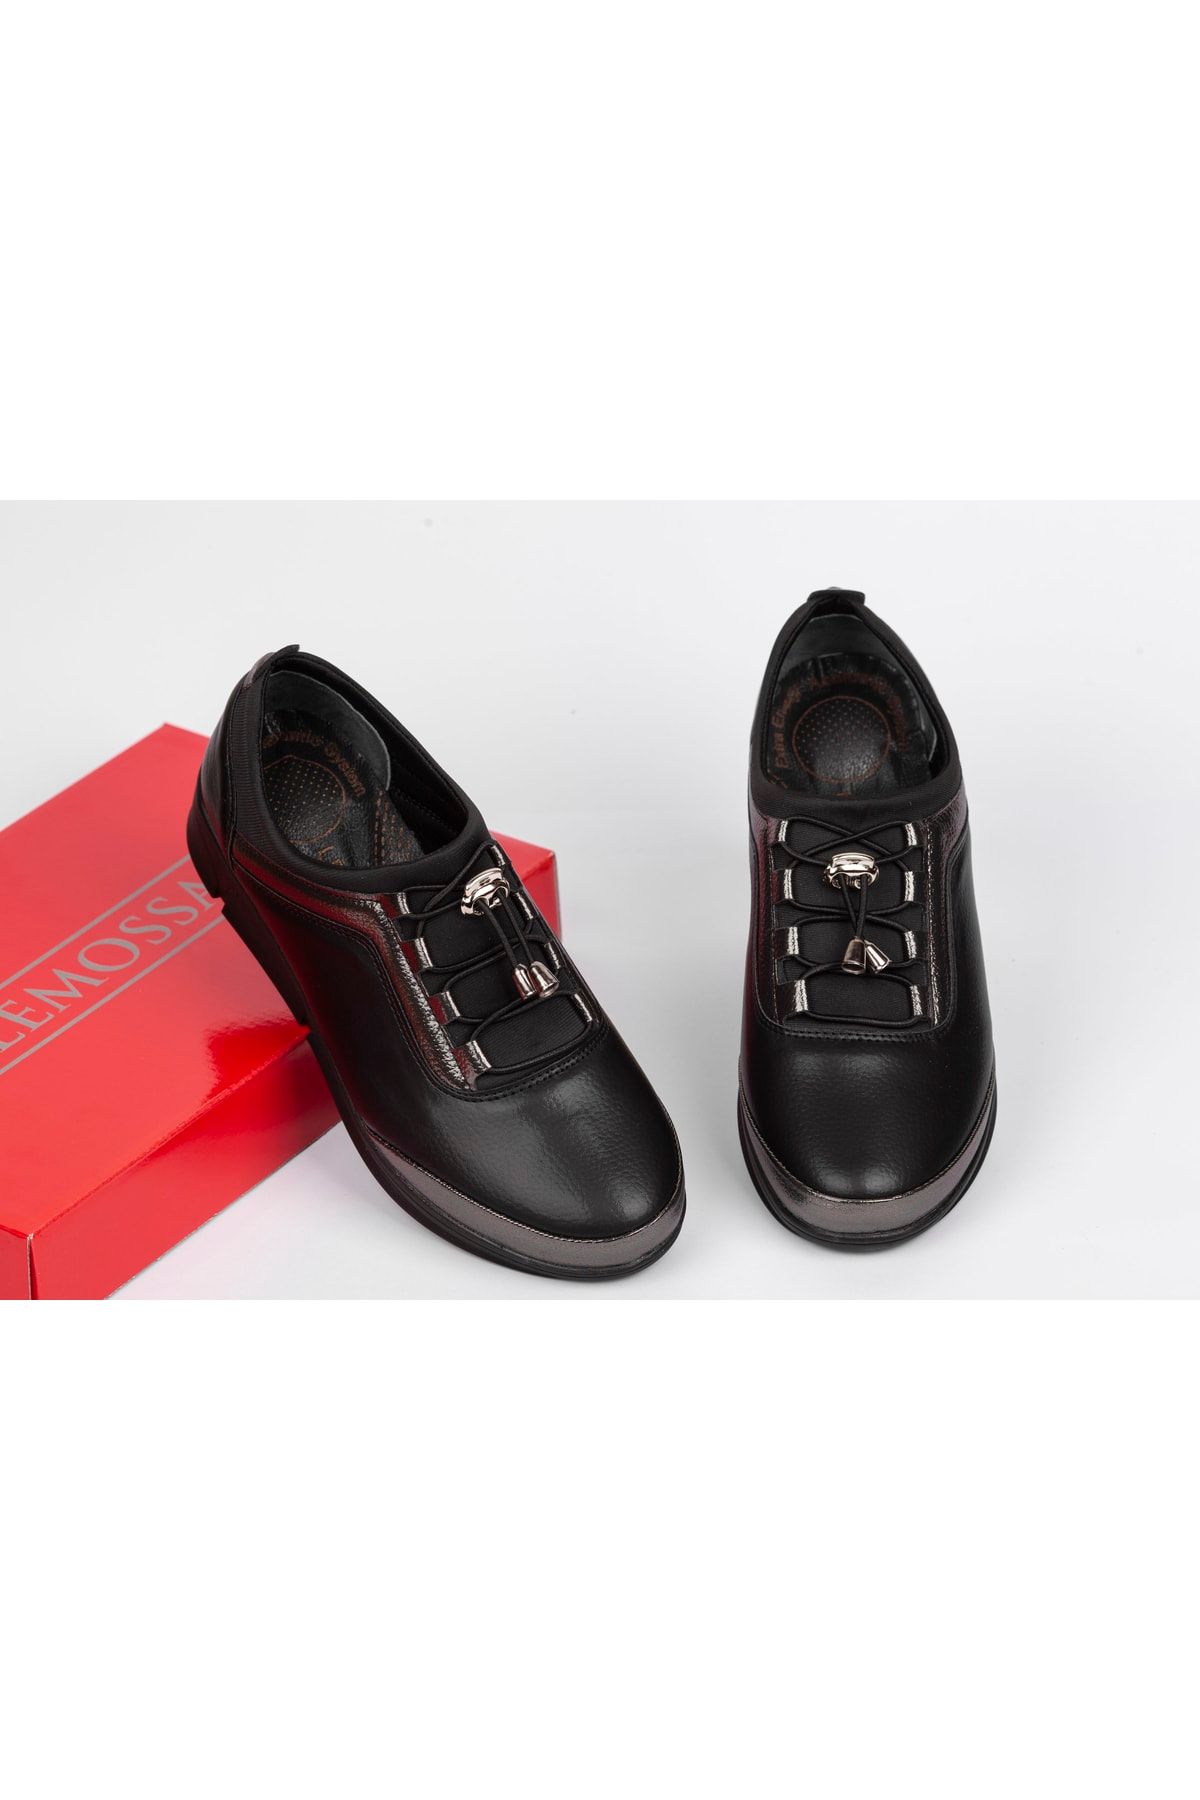 LEMOSSA SHOES Kadın Siyah Ortopedik Anne Babet Ayakkabı Anne Ayakkabı Günlük Ayakkabı Klasik Ayakkabı